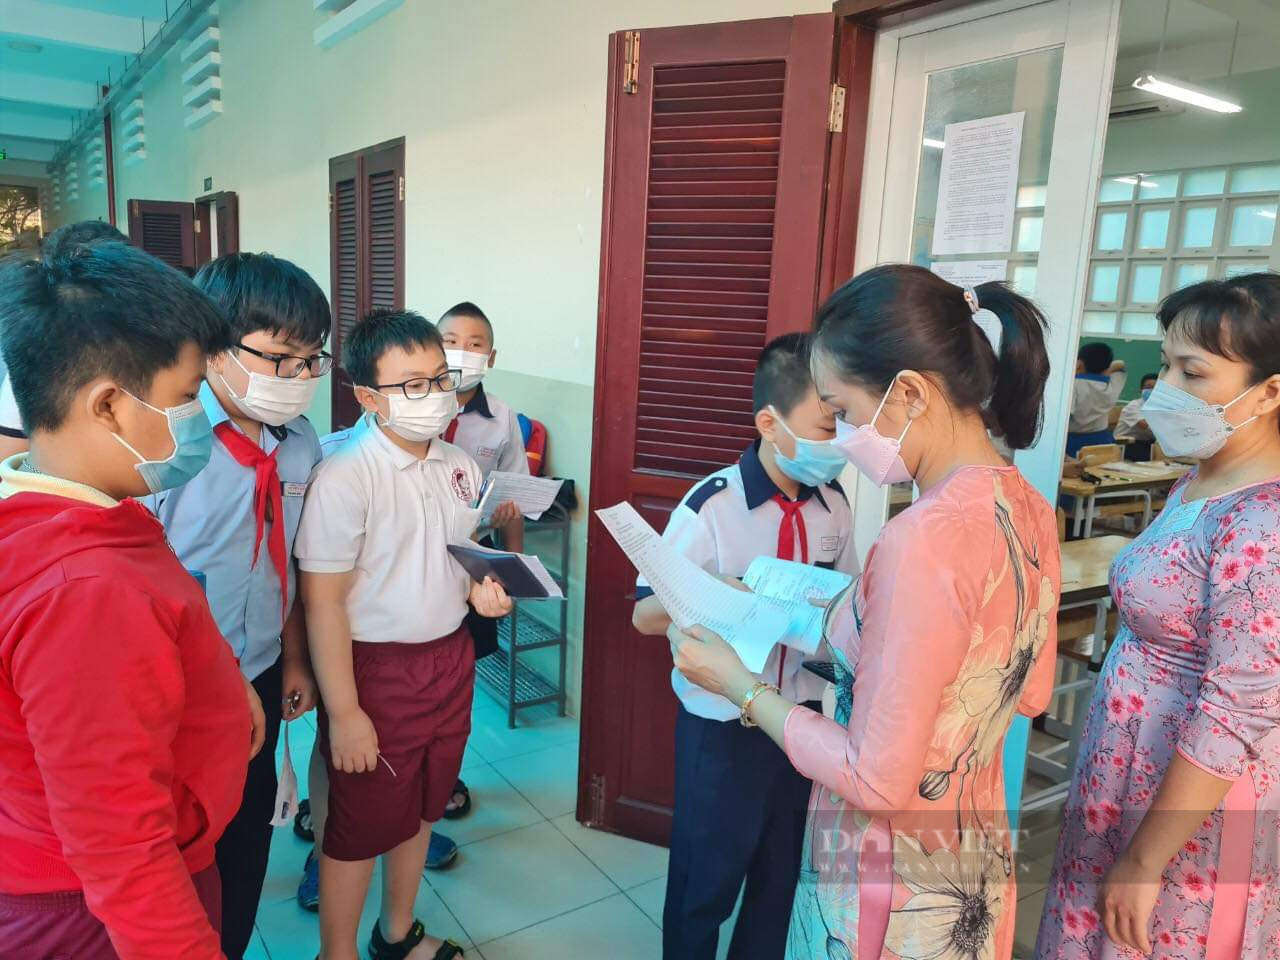 UBND TP.HCM đồng ý tách Trường THPT chuyên Trần Đại Nghĩa thành 2 trường có tư cách pháp nhân riêng- Ảnh 3.